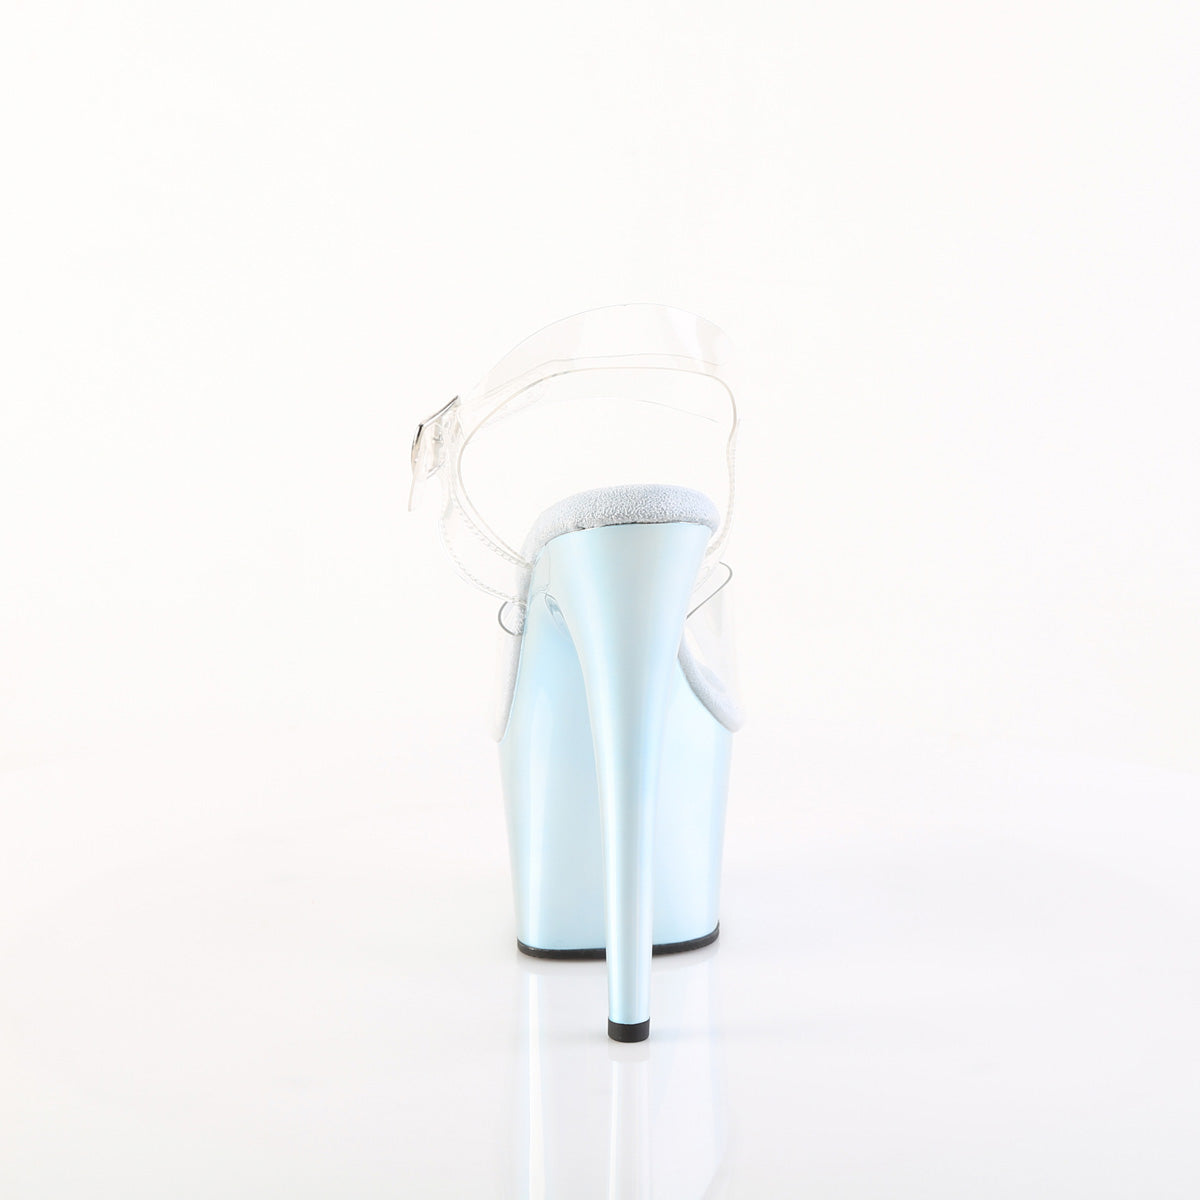 ADORE-708LQ Pleaser Light Blue Holograph Pole Dancing Shoes.